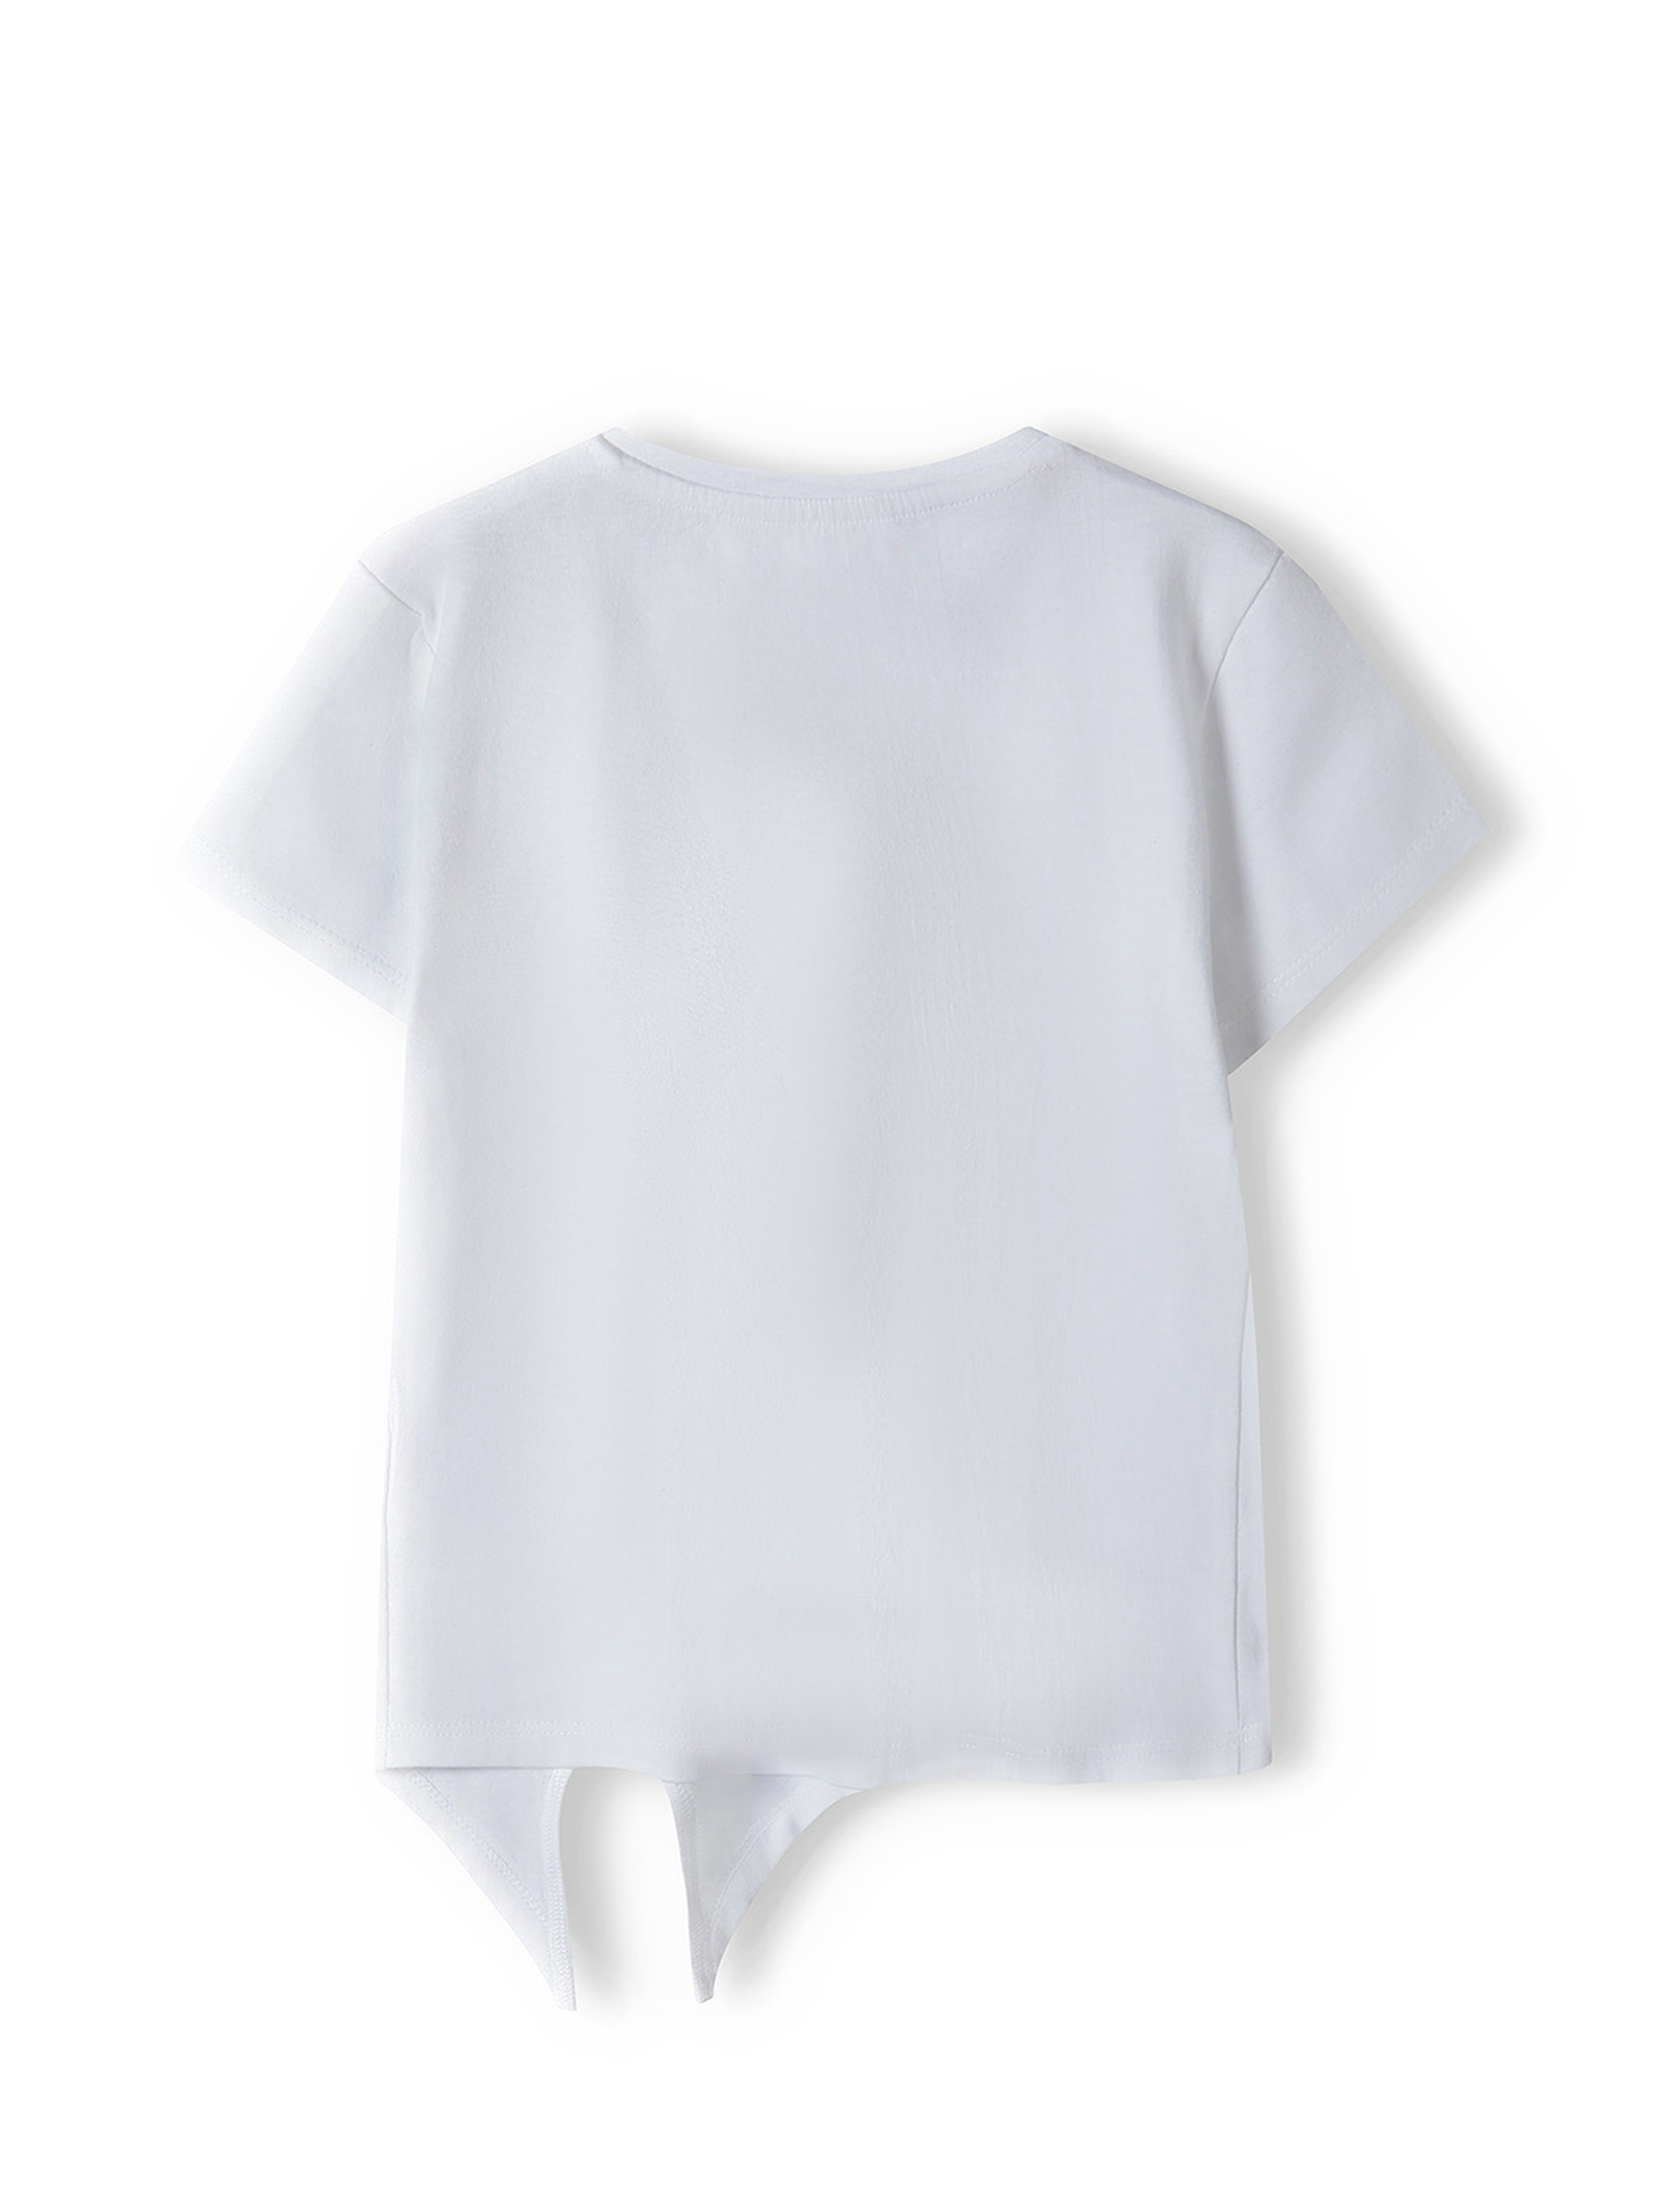 Biała koszulka bawełniana niemowlęca z wiązaniem